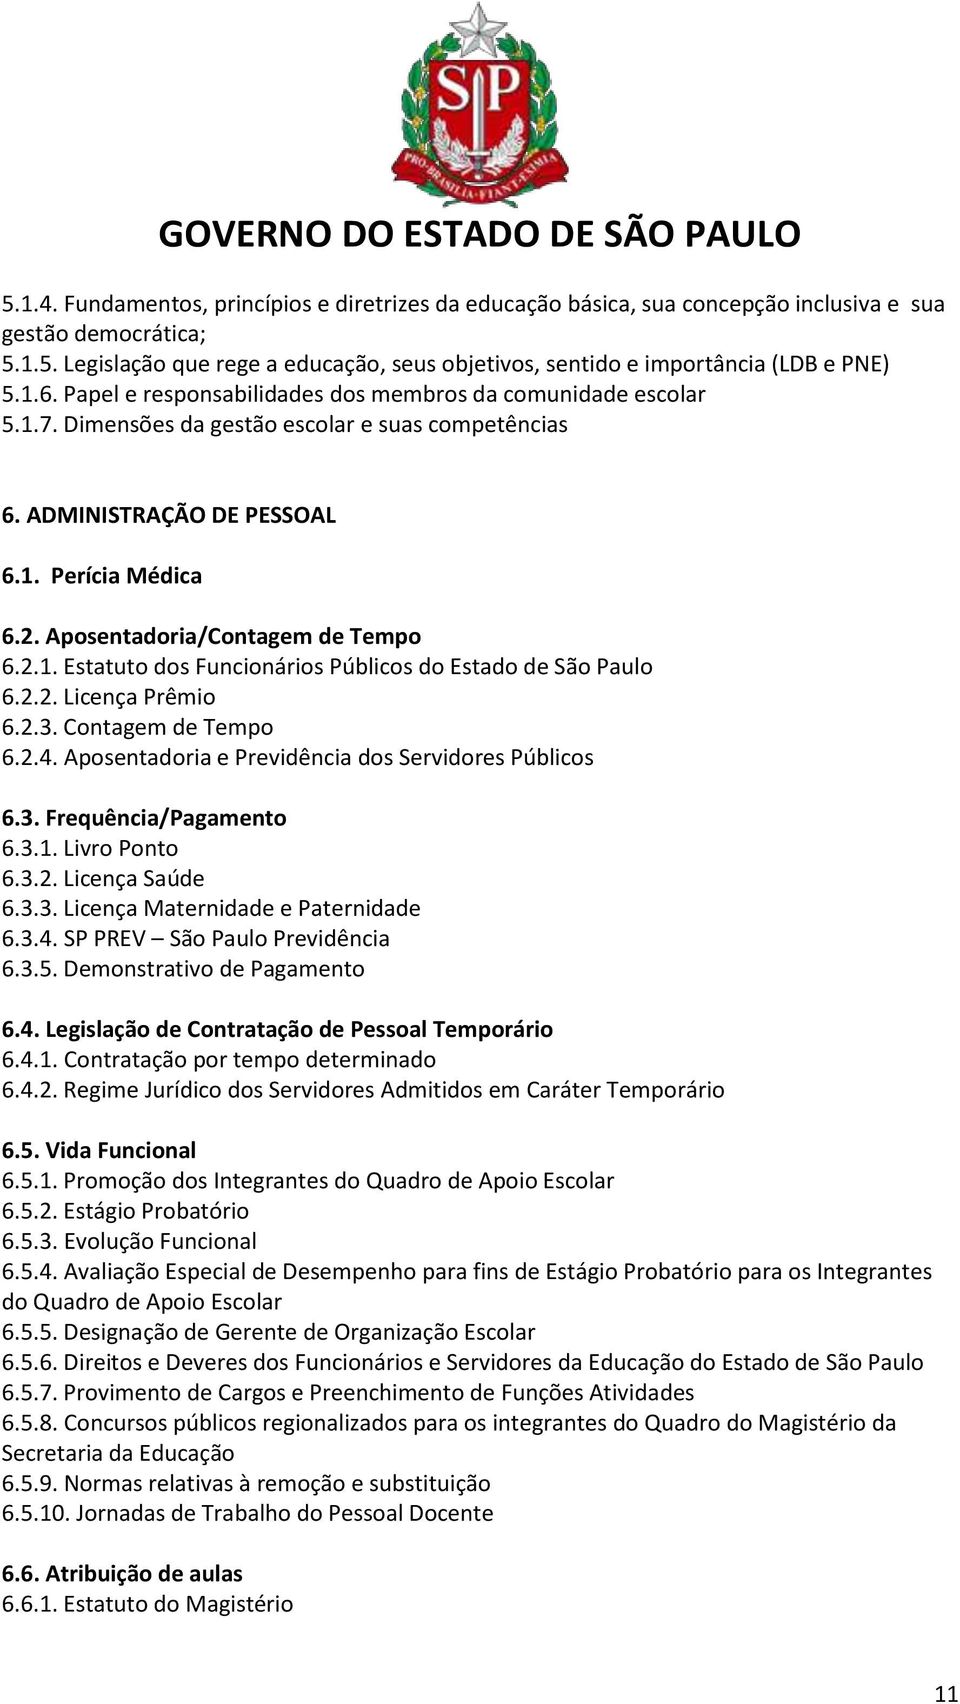 Aposentadoria/Contagem de Tempo 6.2.1. Estatuto dos Funcionários Públicos do Estado de São Paulo 6.2.2. Licença Prêmio 6.2.3. Contagem de Tempo 6.2.4.